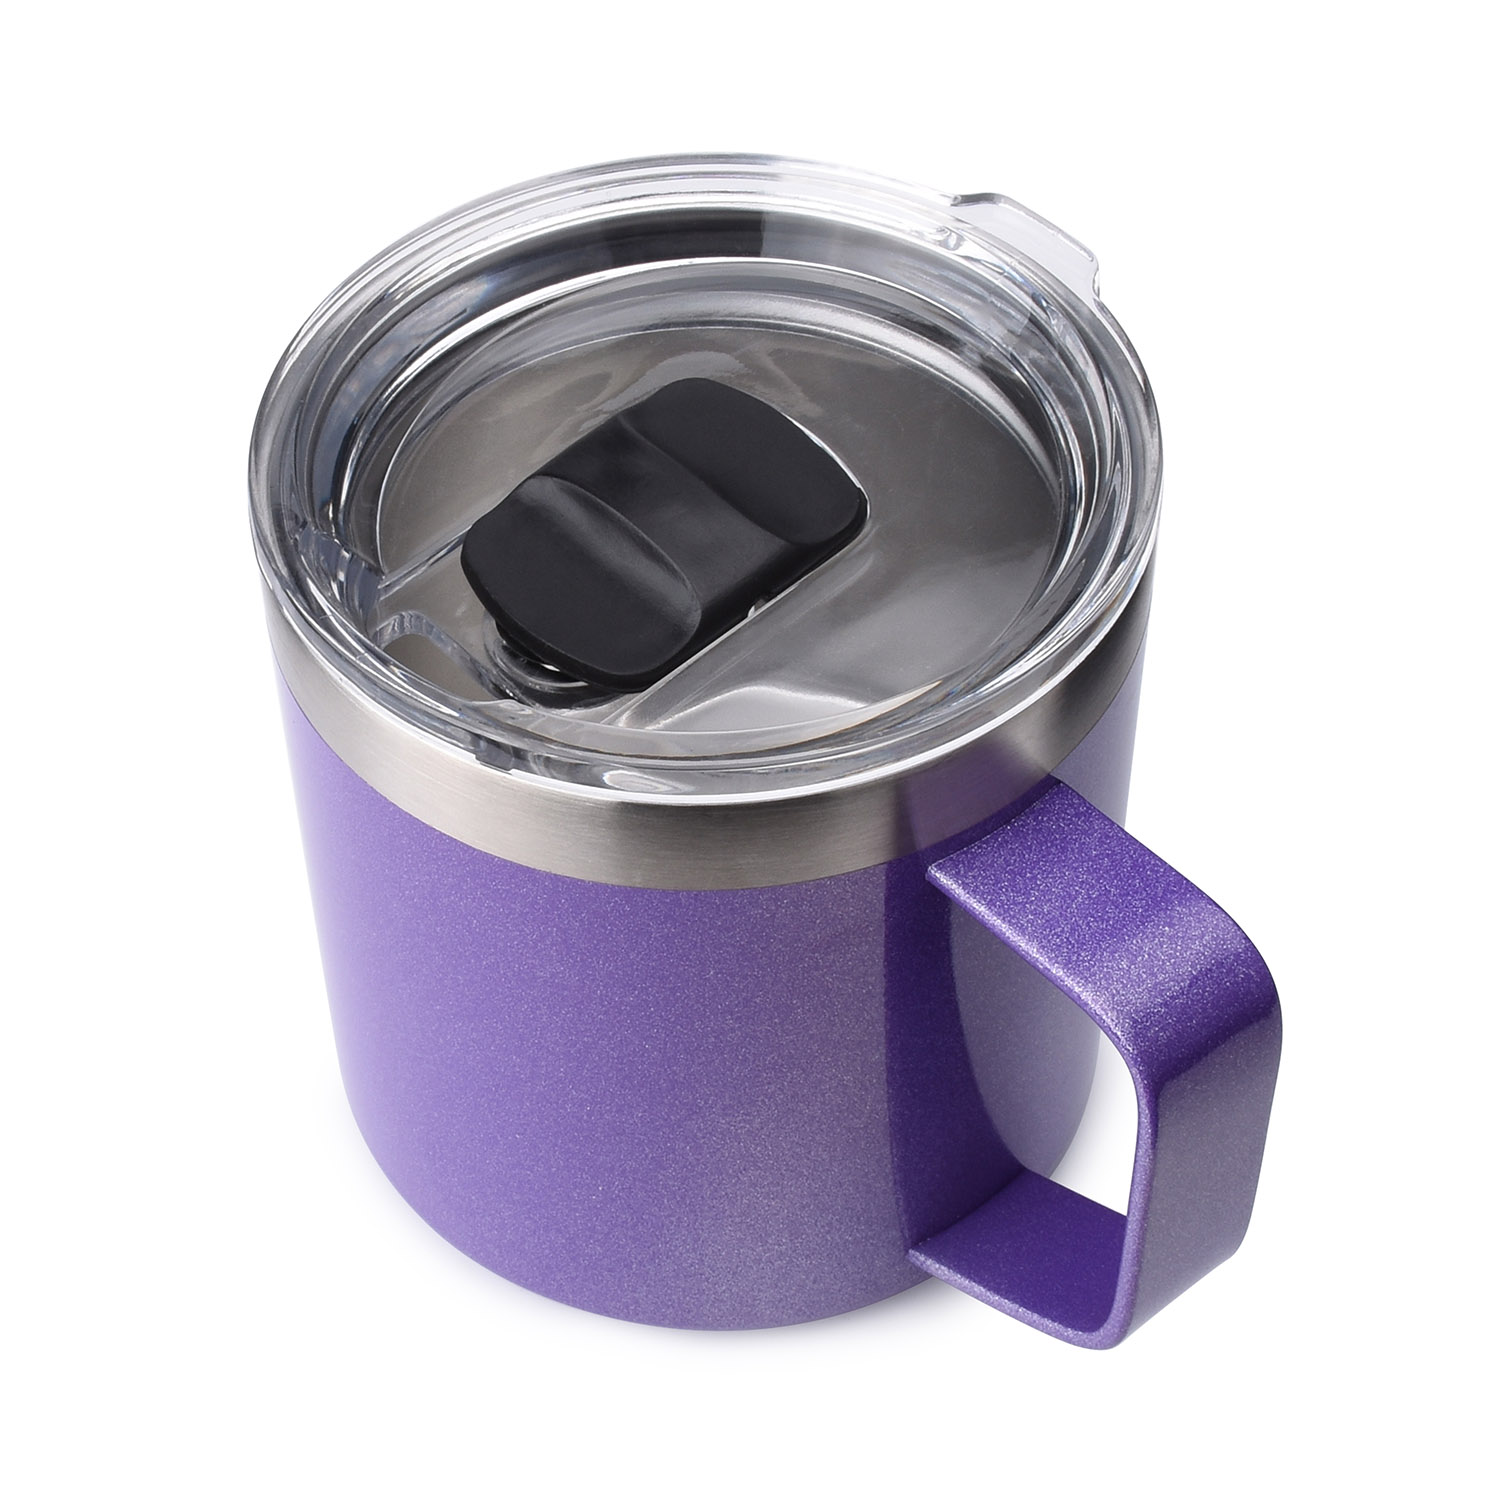 Yeti 14oz Rambler Mug - Purple